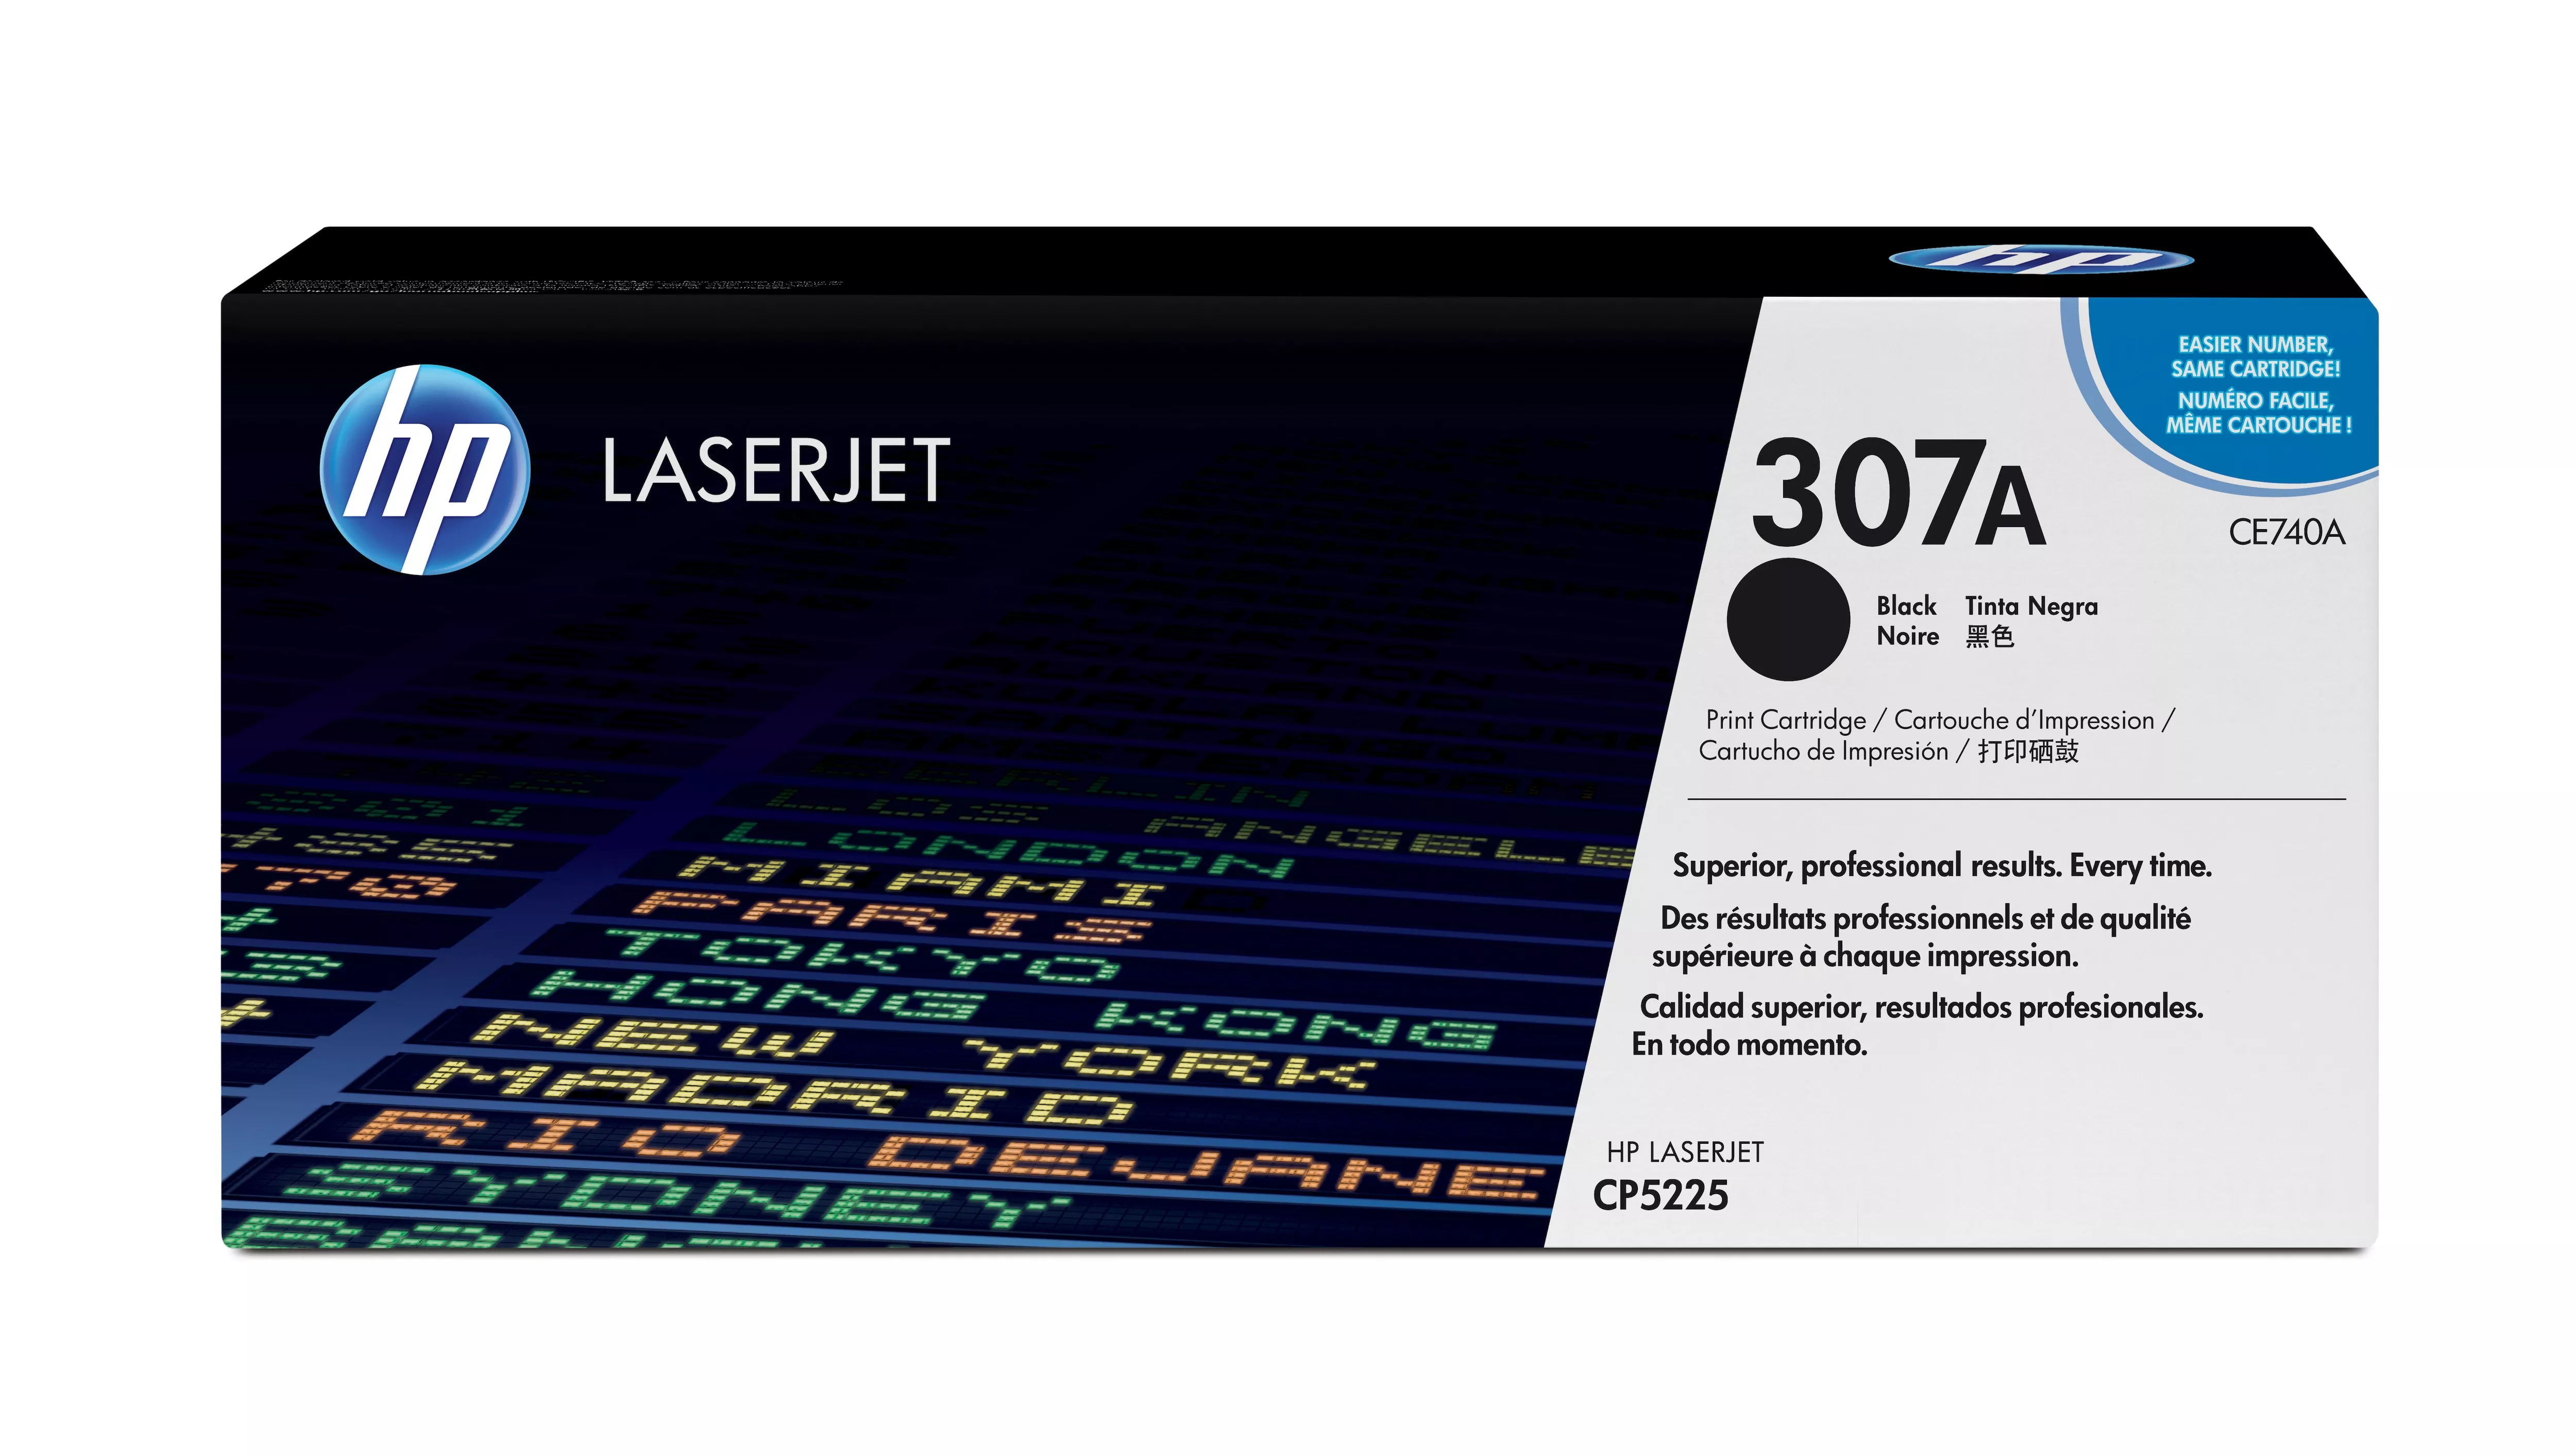 Achat HP original Colour Laserjet CE740A Toner cartridge black au meilleur prix